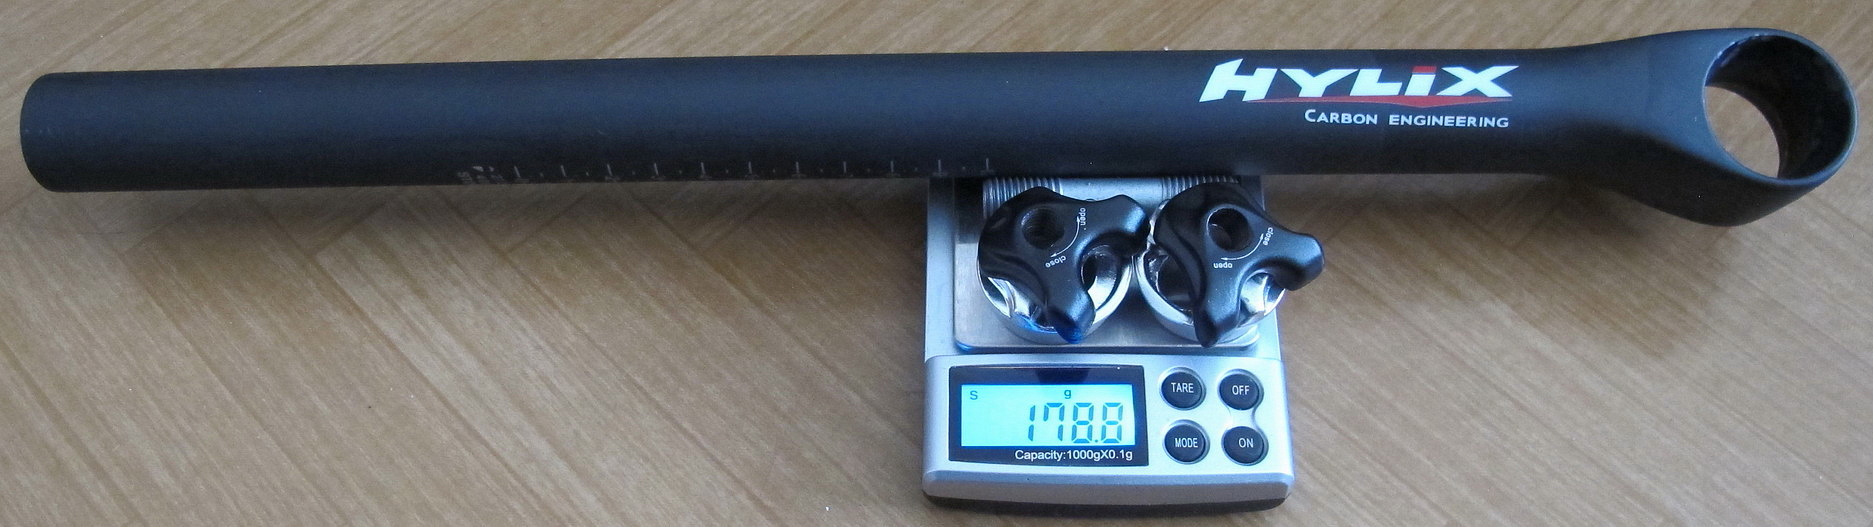 Hylix carbon 27,2-400mm(5mm offset) small sharp